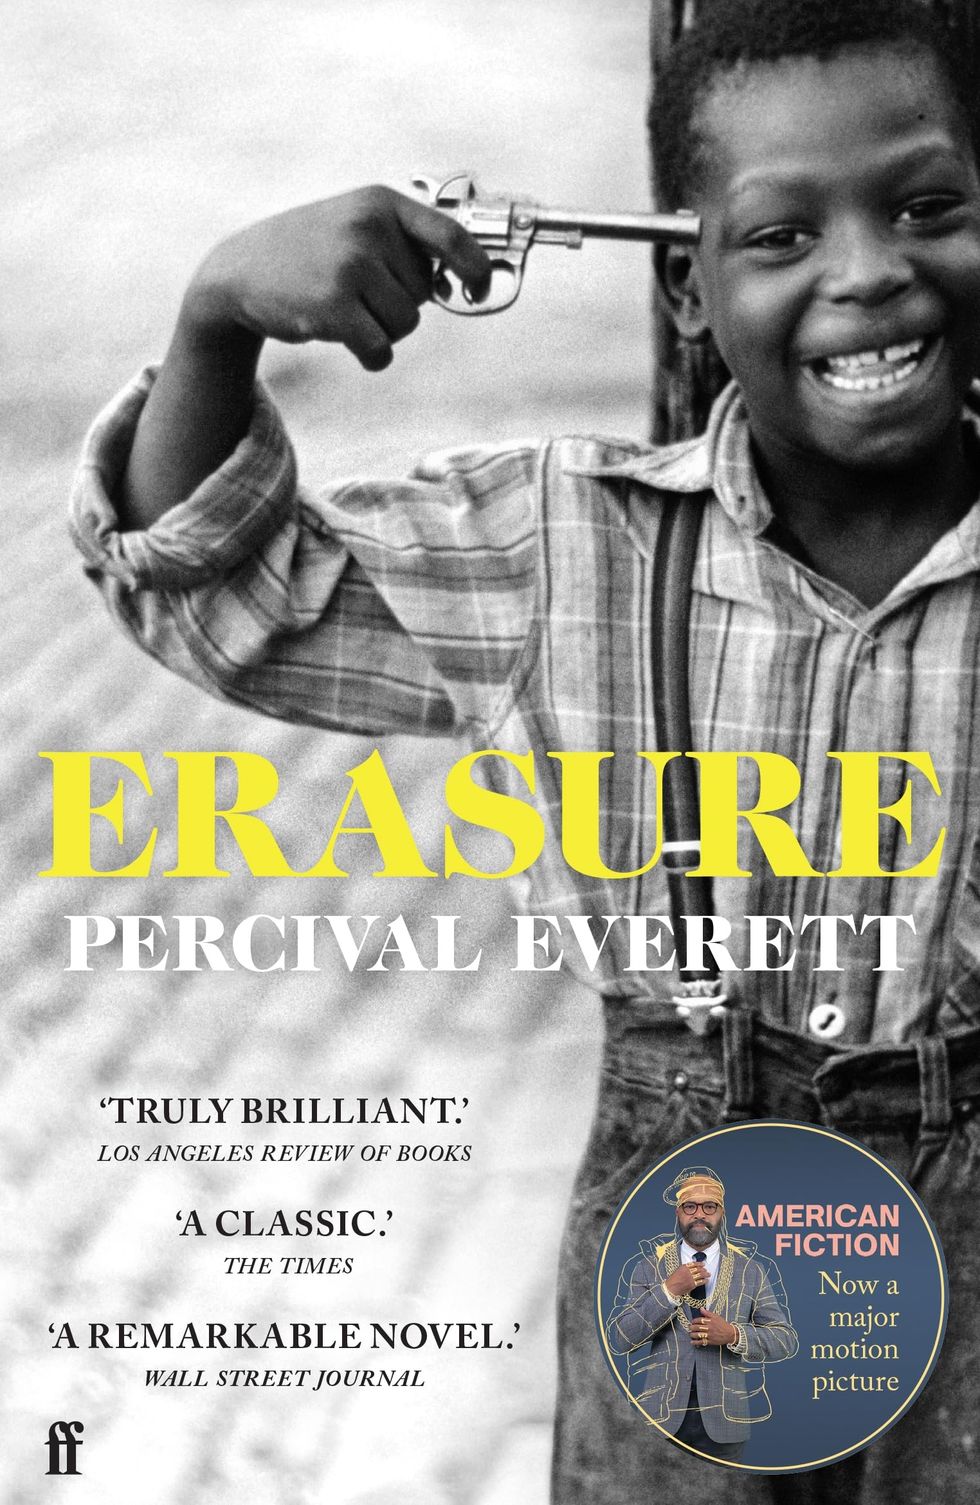 'Erasure', el libro en el que se basa 'American Fiction'